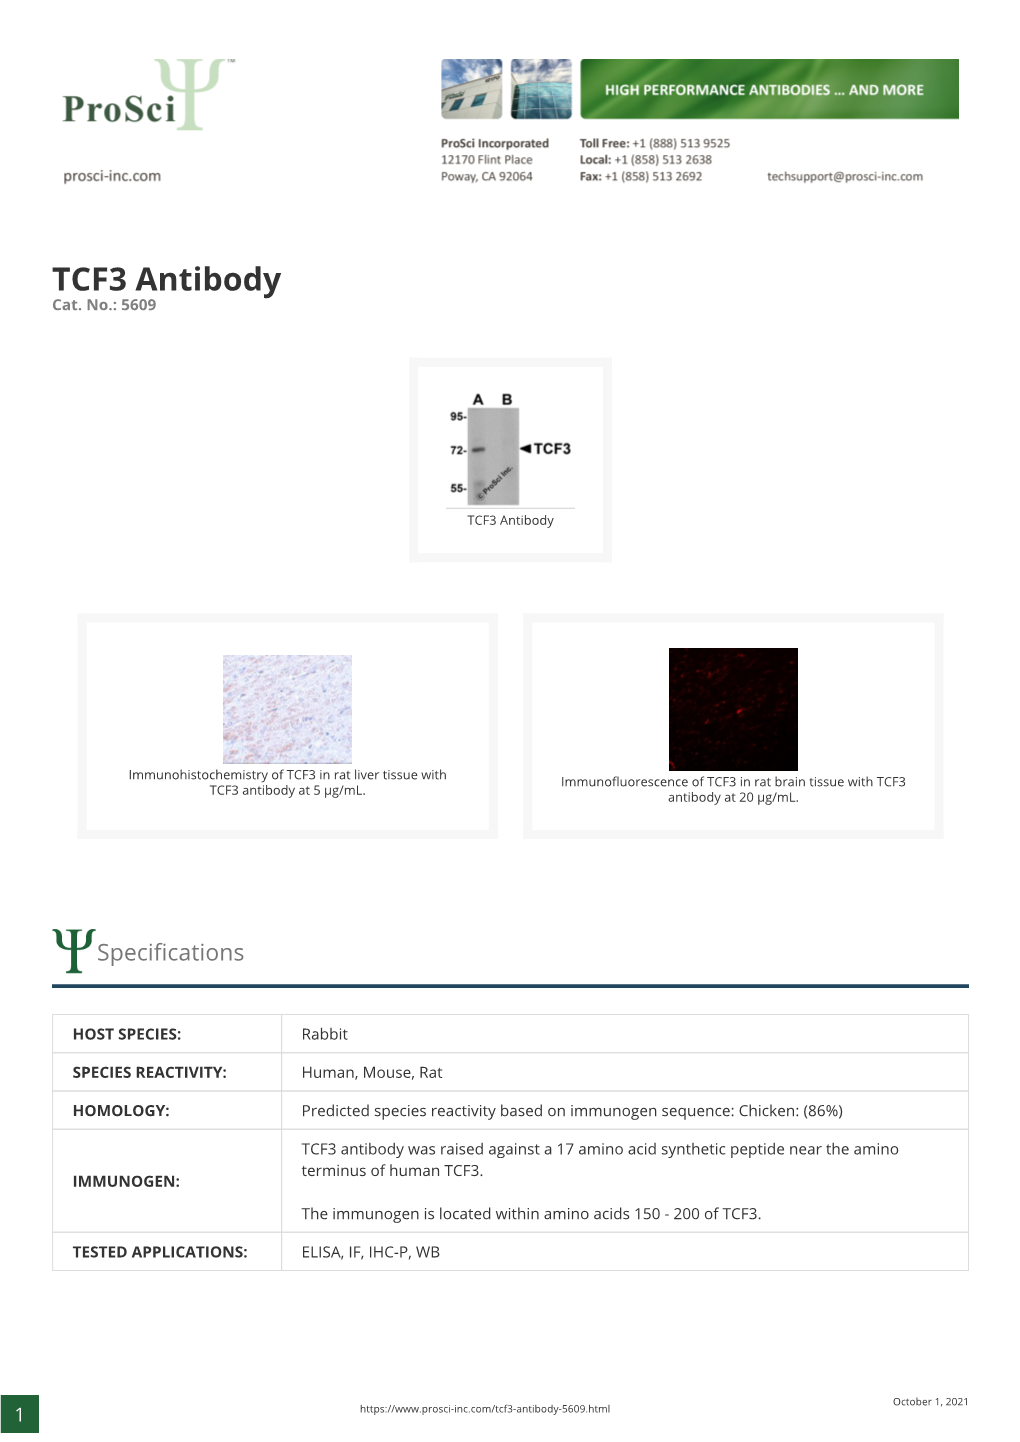 TCF3 Antibody Cat